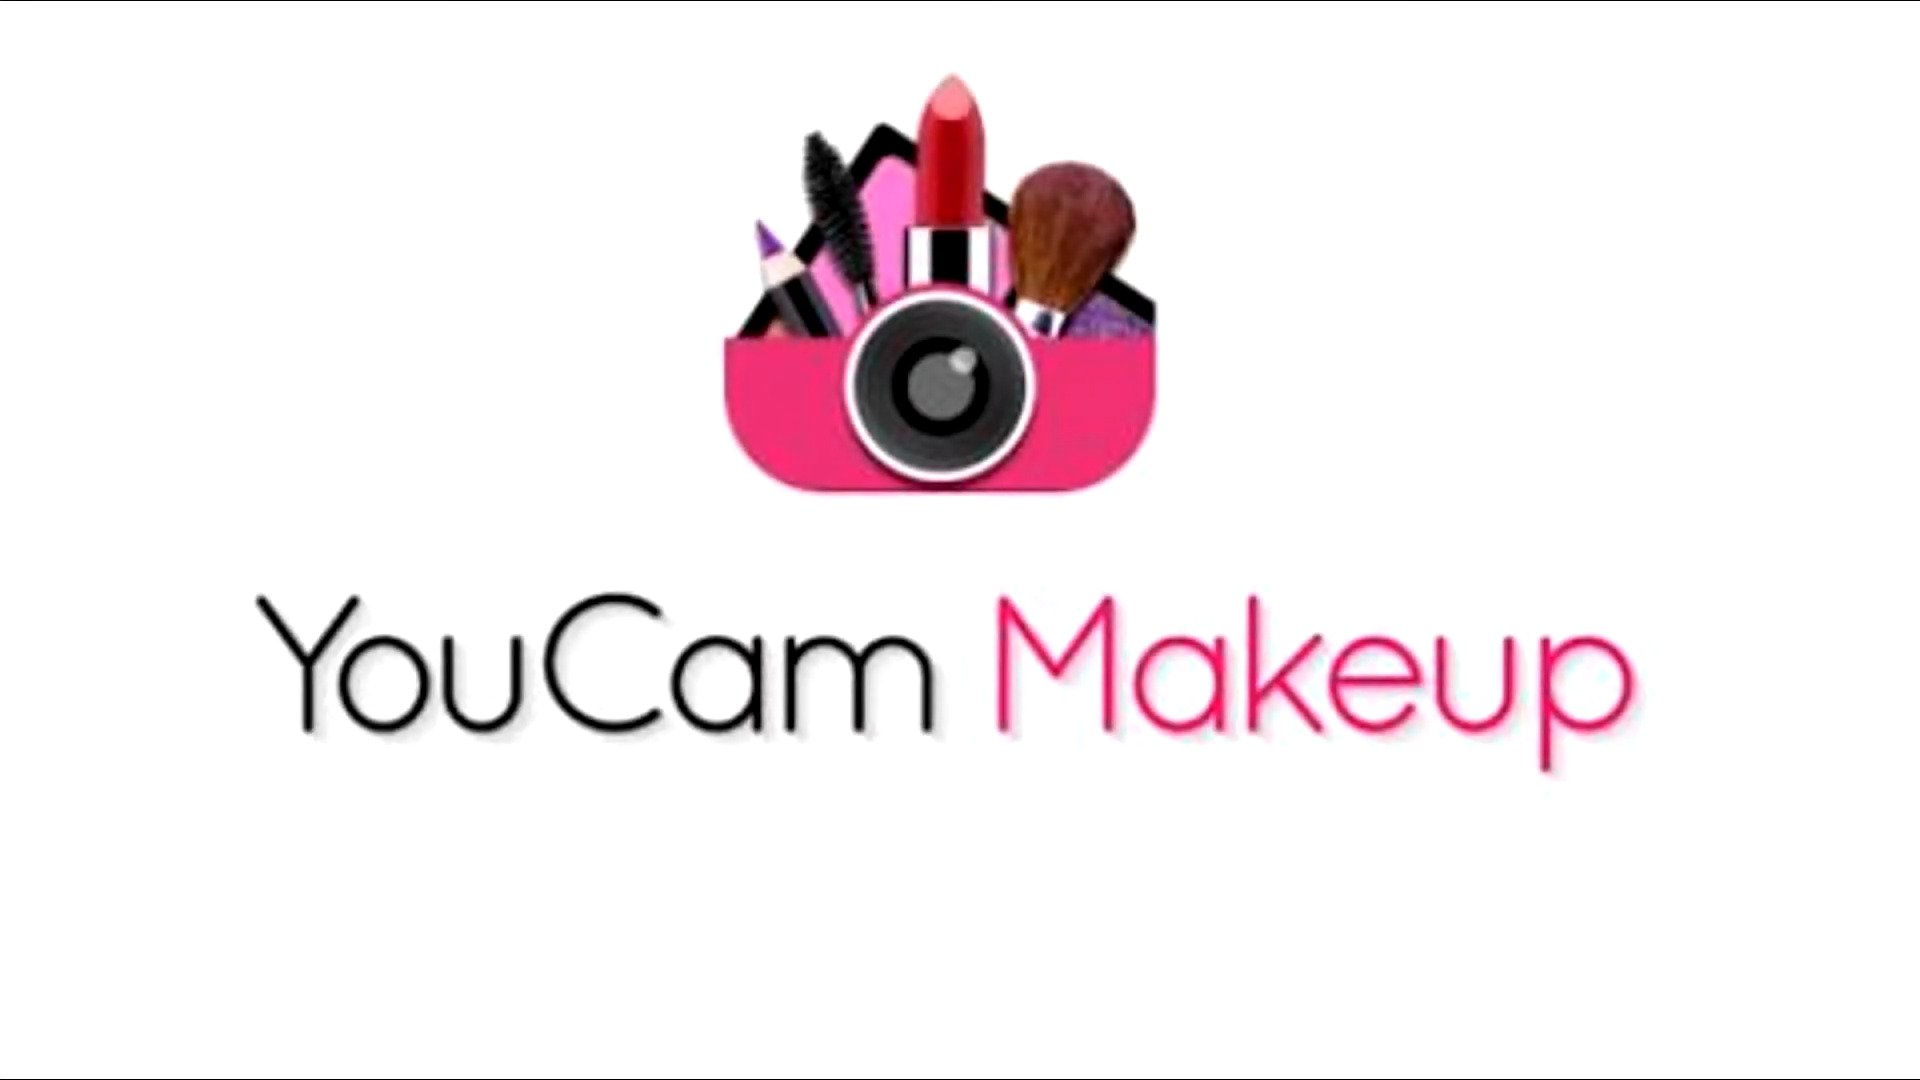 YouCam Makeup- селфи-камера &amp; виртуальный мейковер